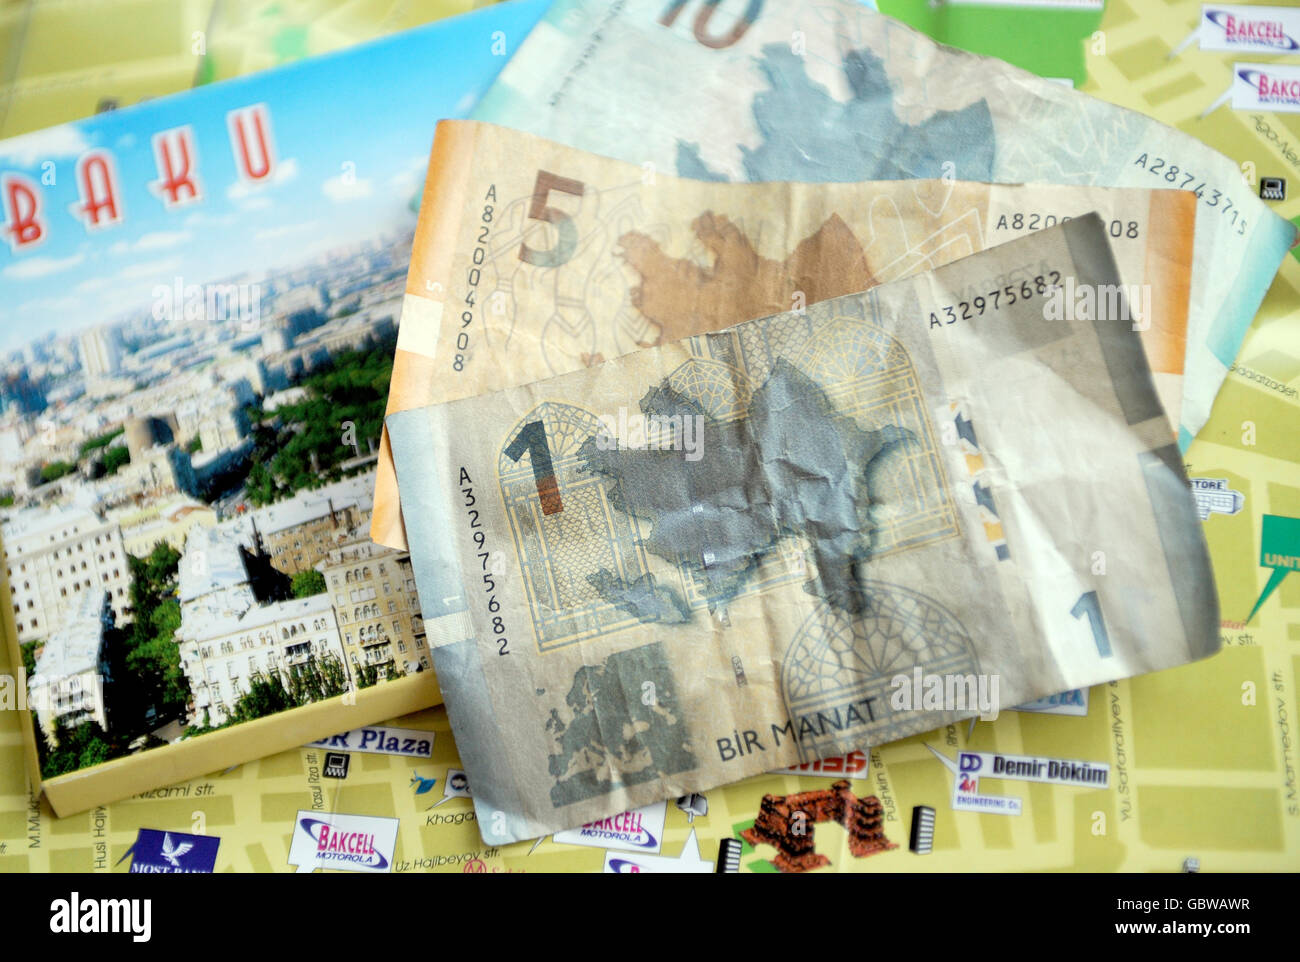 Reisestacks - Baku - Aserbaidschan. Allgemeine Ansicht der aserbaidschanischen Währung, der Manat, oben auf einer Karte von Baku, Aserbaidschan Stockfoto